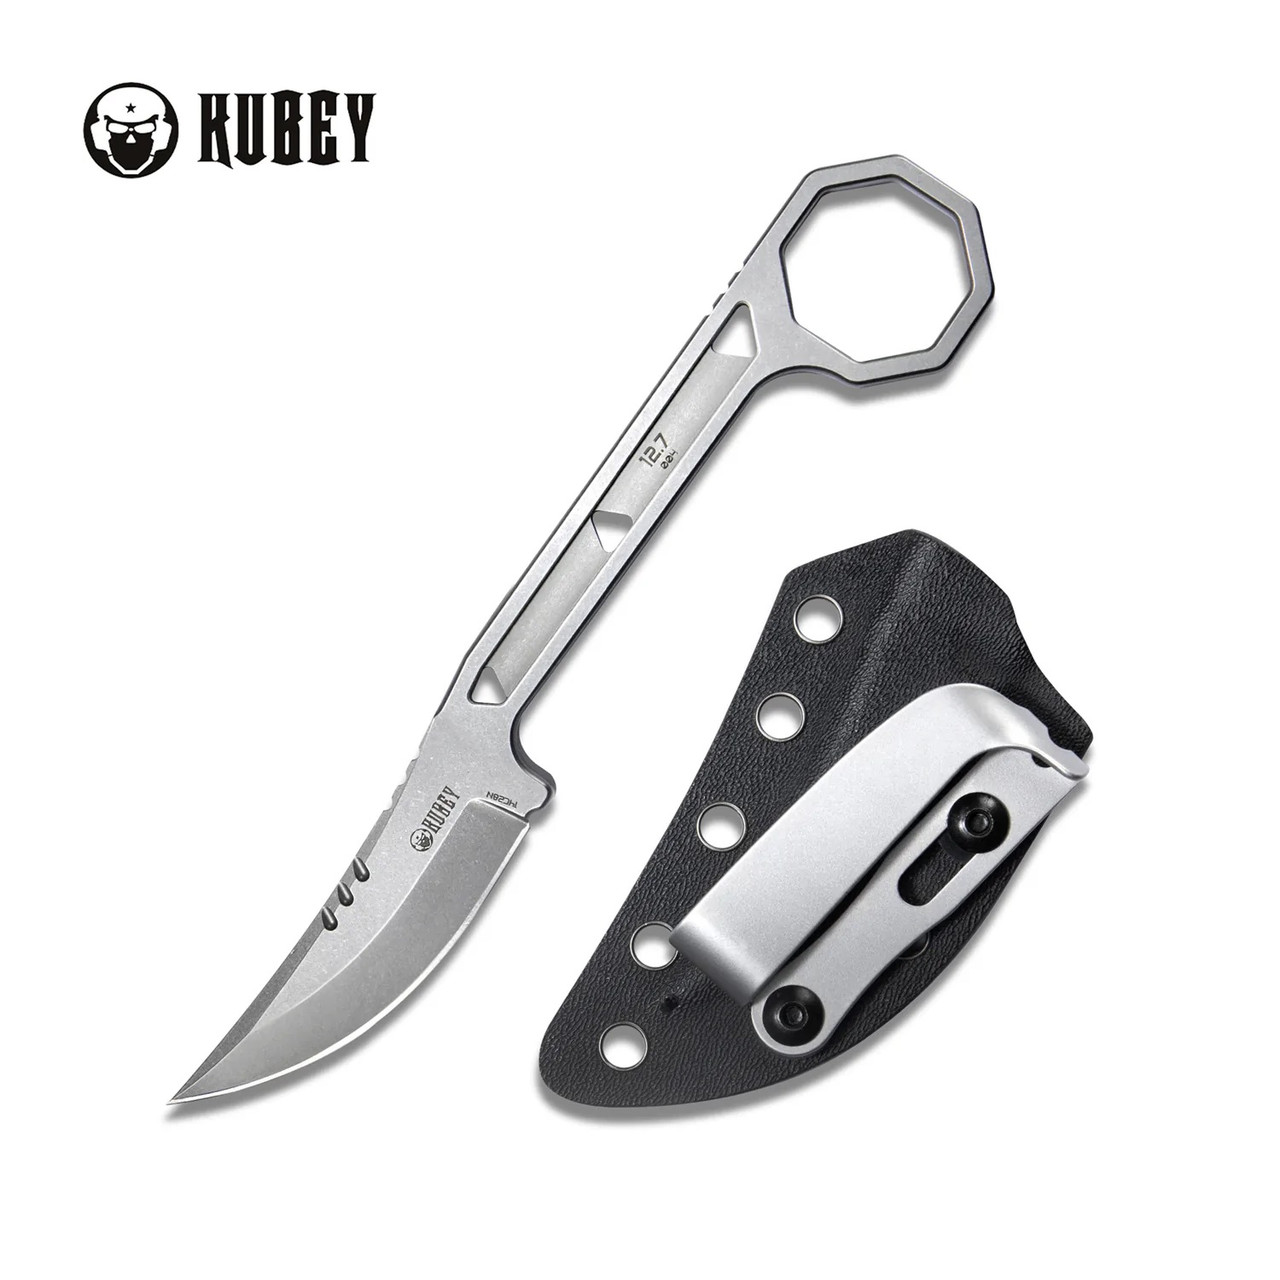 Kubey Hydra Design 12.7 Fixed Blade Knife Skeletonized Handle